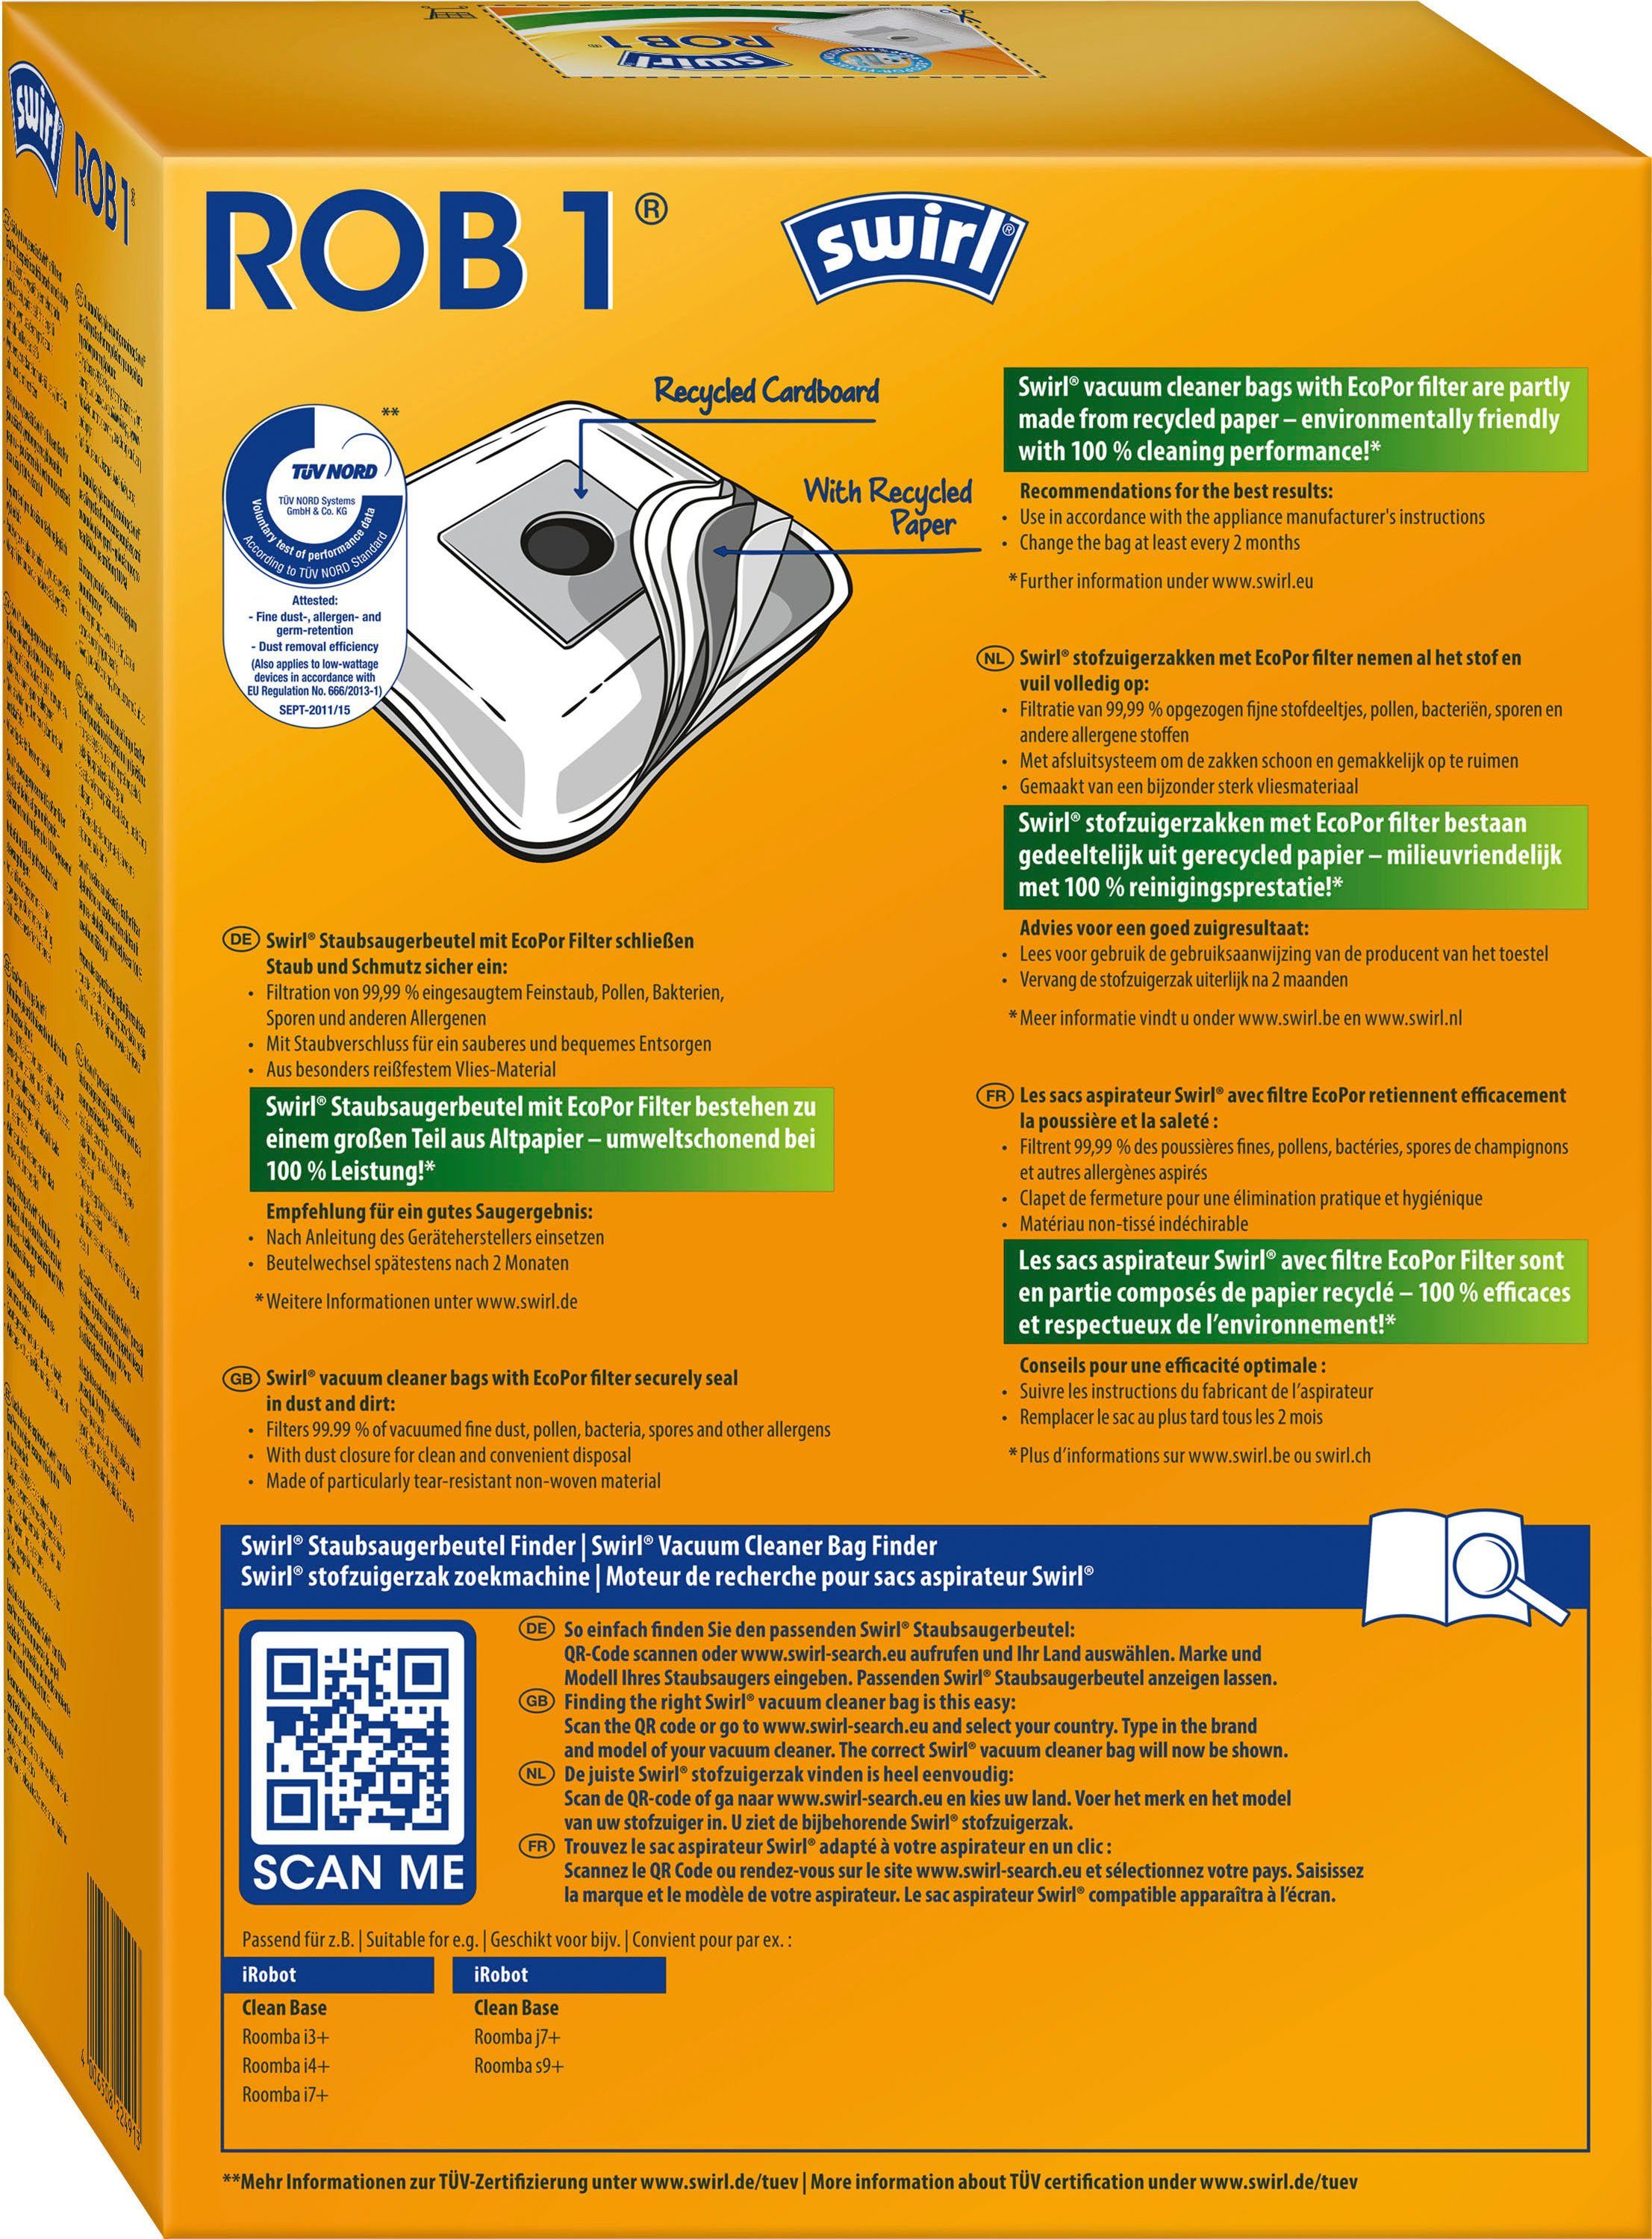 Swirl Staubsaugerbeutel ROB 1®, Base Absaugstation, Clean iRobot 4er-Pack Automatische für